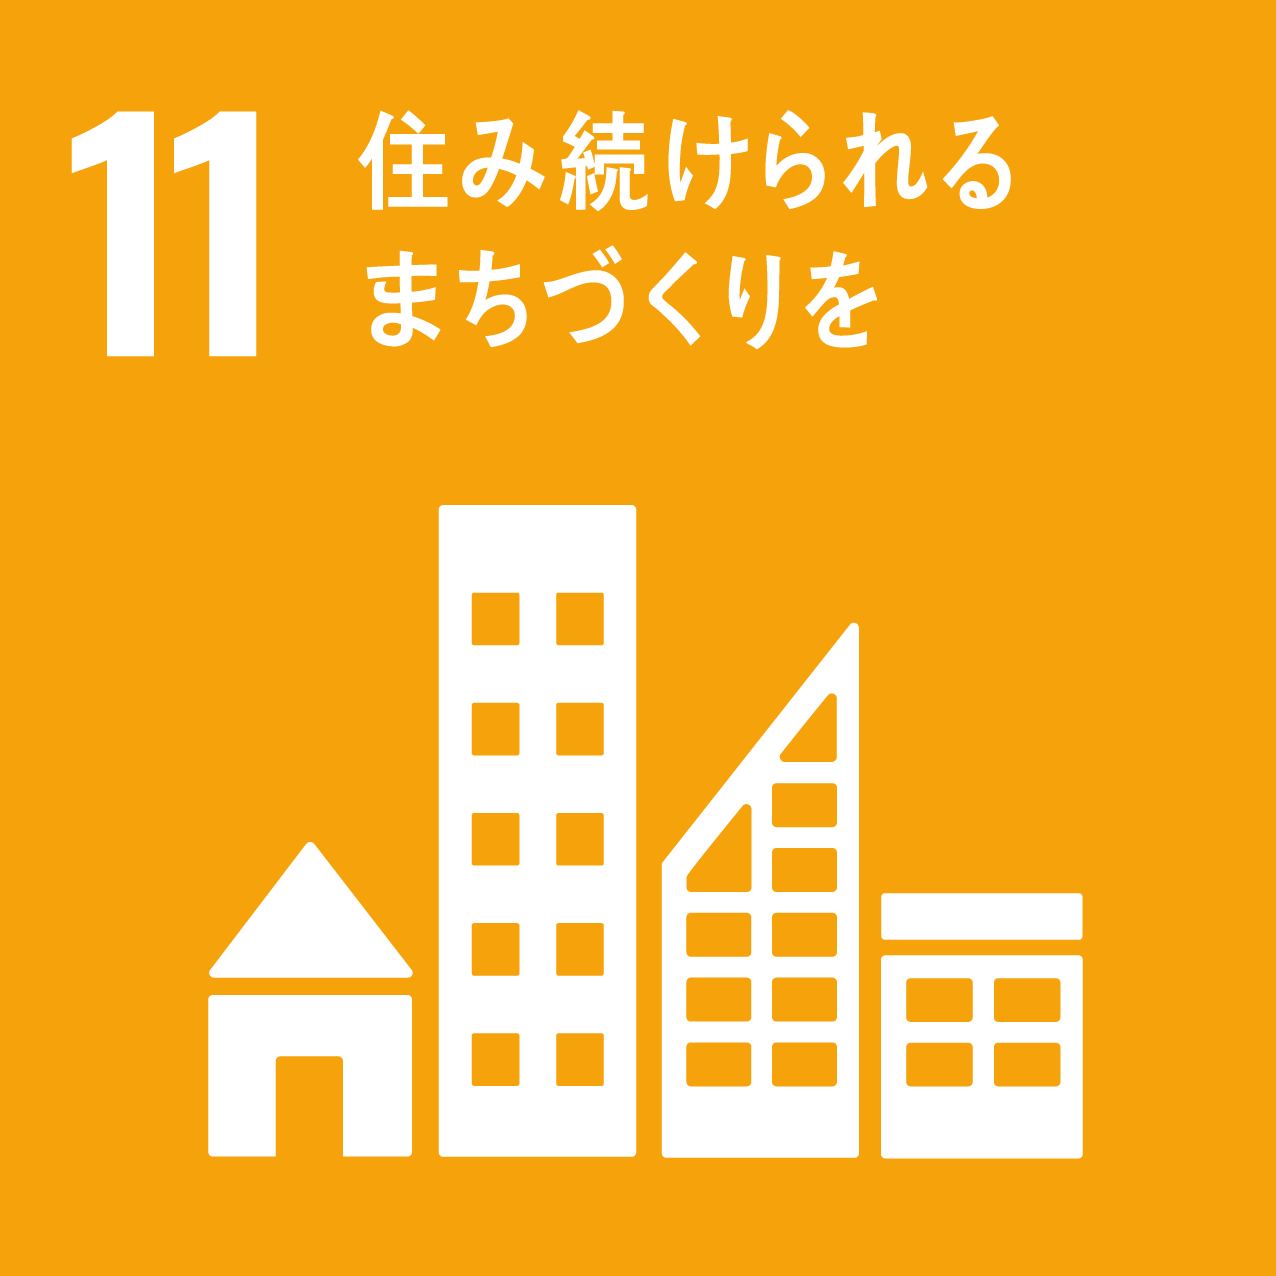 空き家問題について考えることは、SDGsの17の目標のうち「11．住み続けられるまちづくりを」の目標達成につながります。